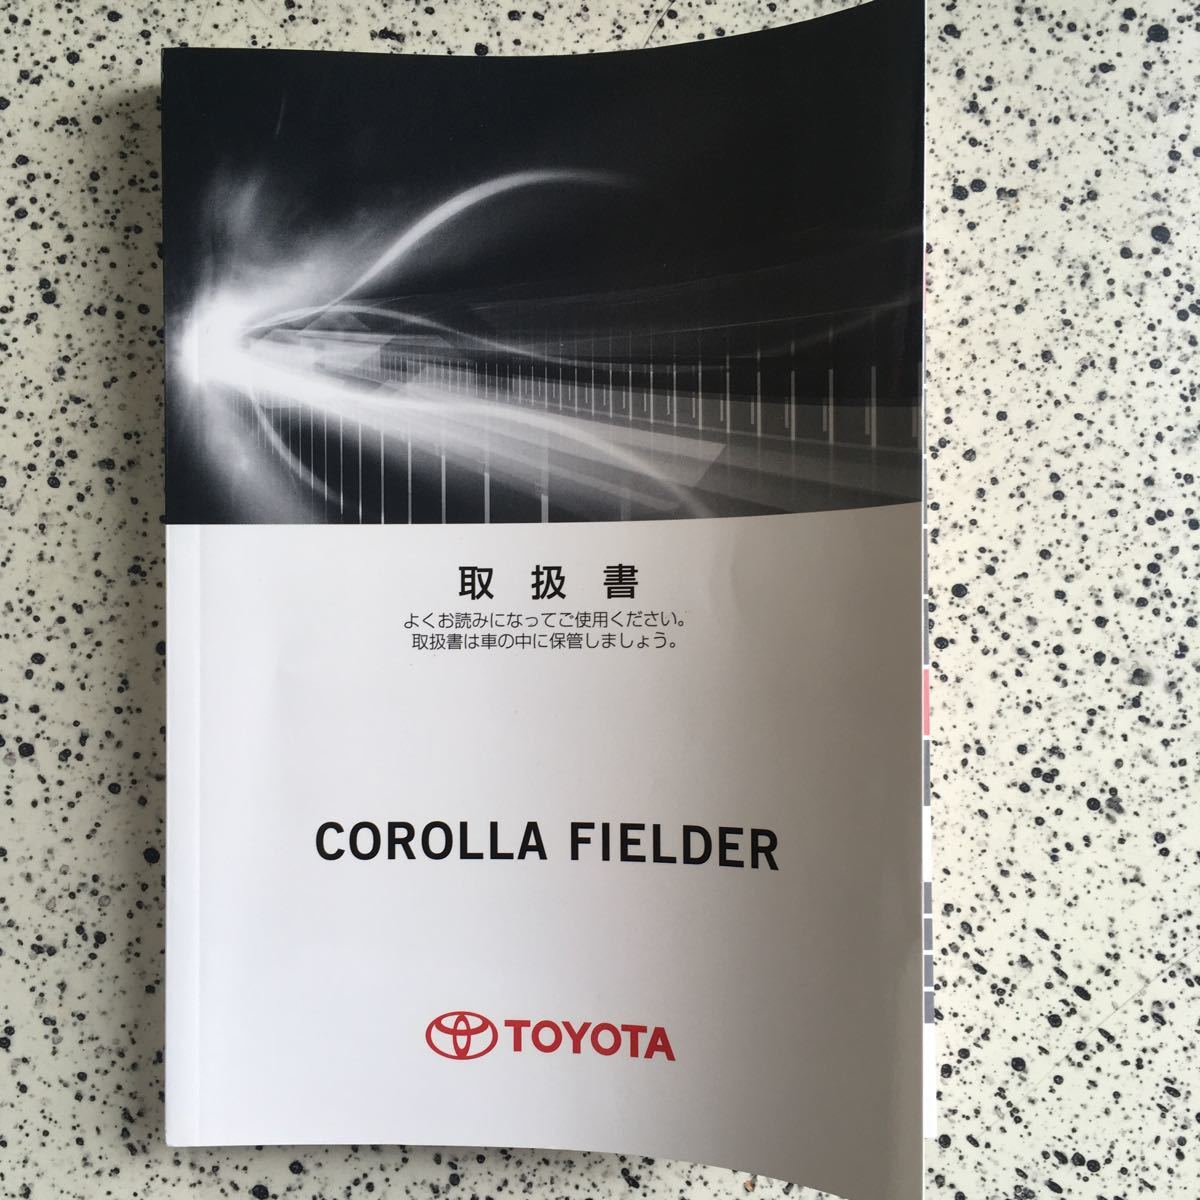  Corolla Fielder 160 серия бензиновая машина инструкция по эксплуатации 